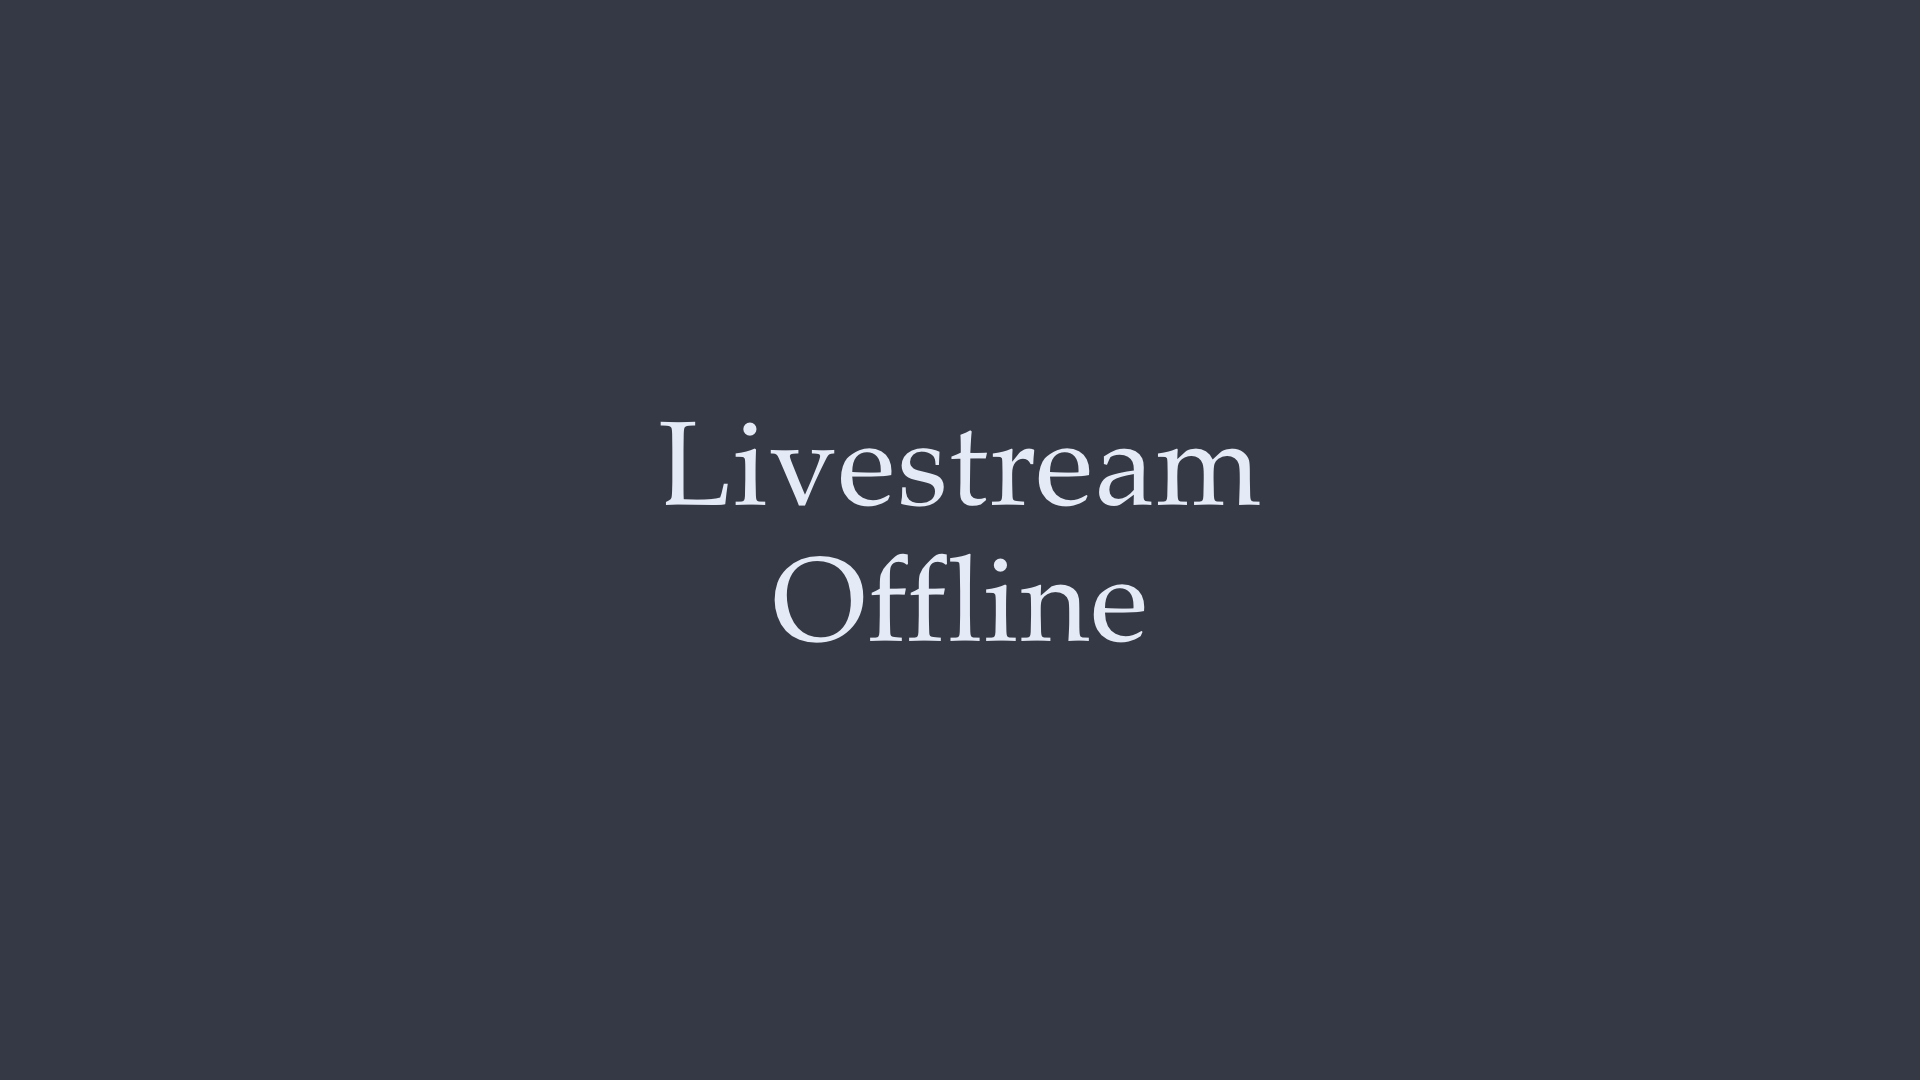 Livestream Offline